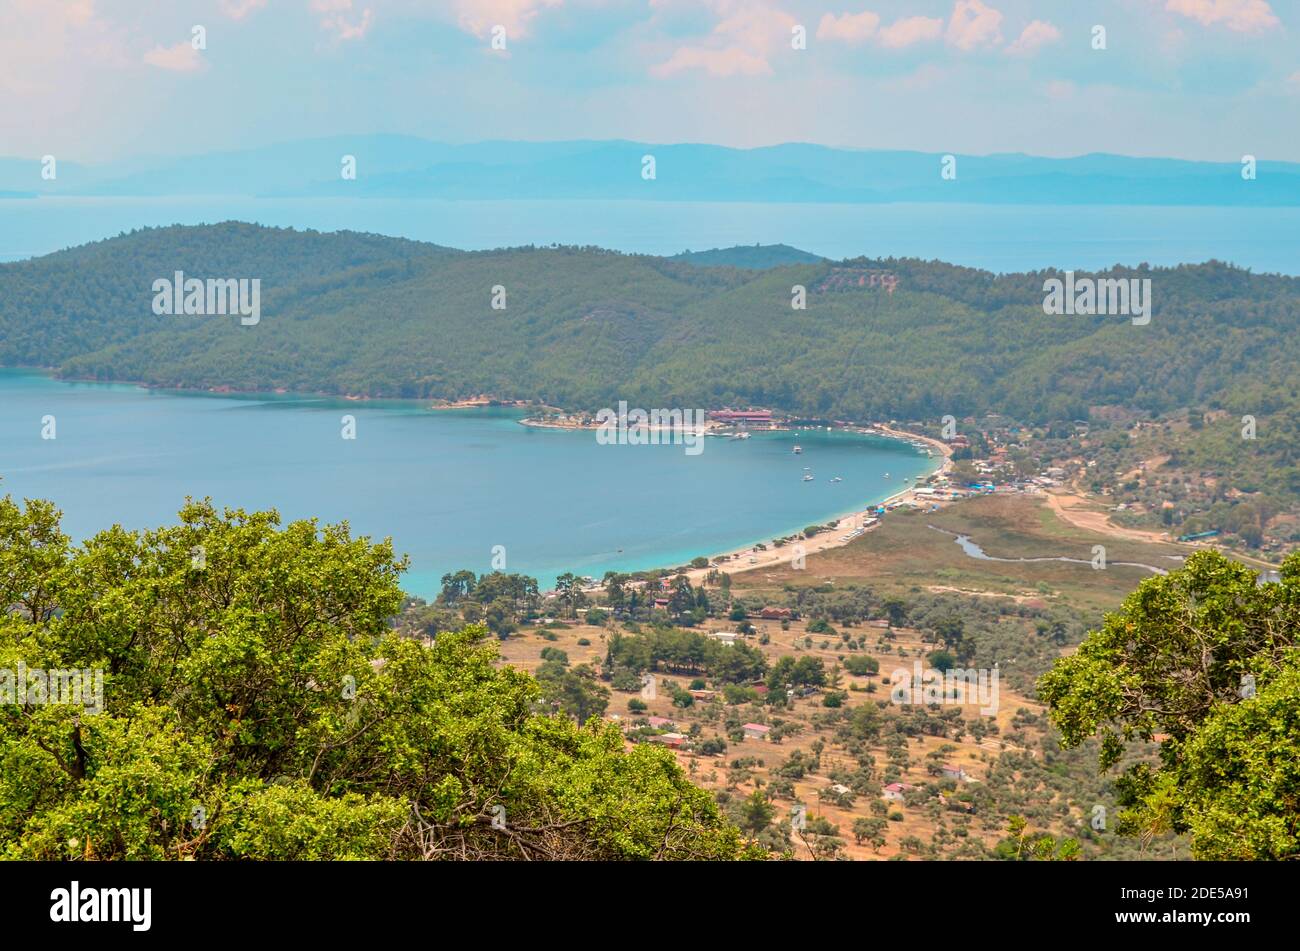 Vue de printemps sur la plage de la Turquie. Magnifique paysage marin de la mer Méditerranée. Banque D'Images